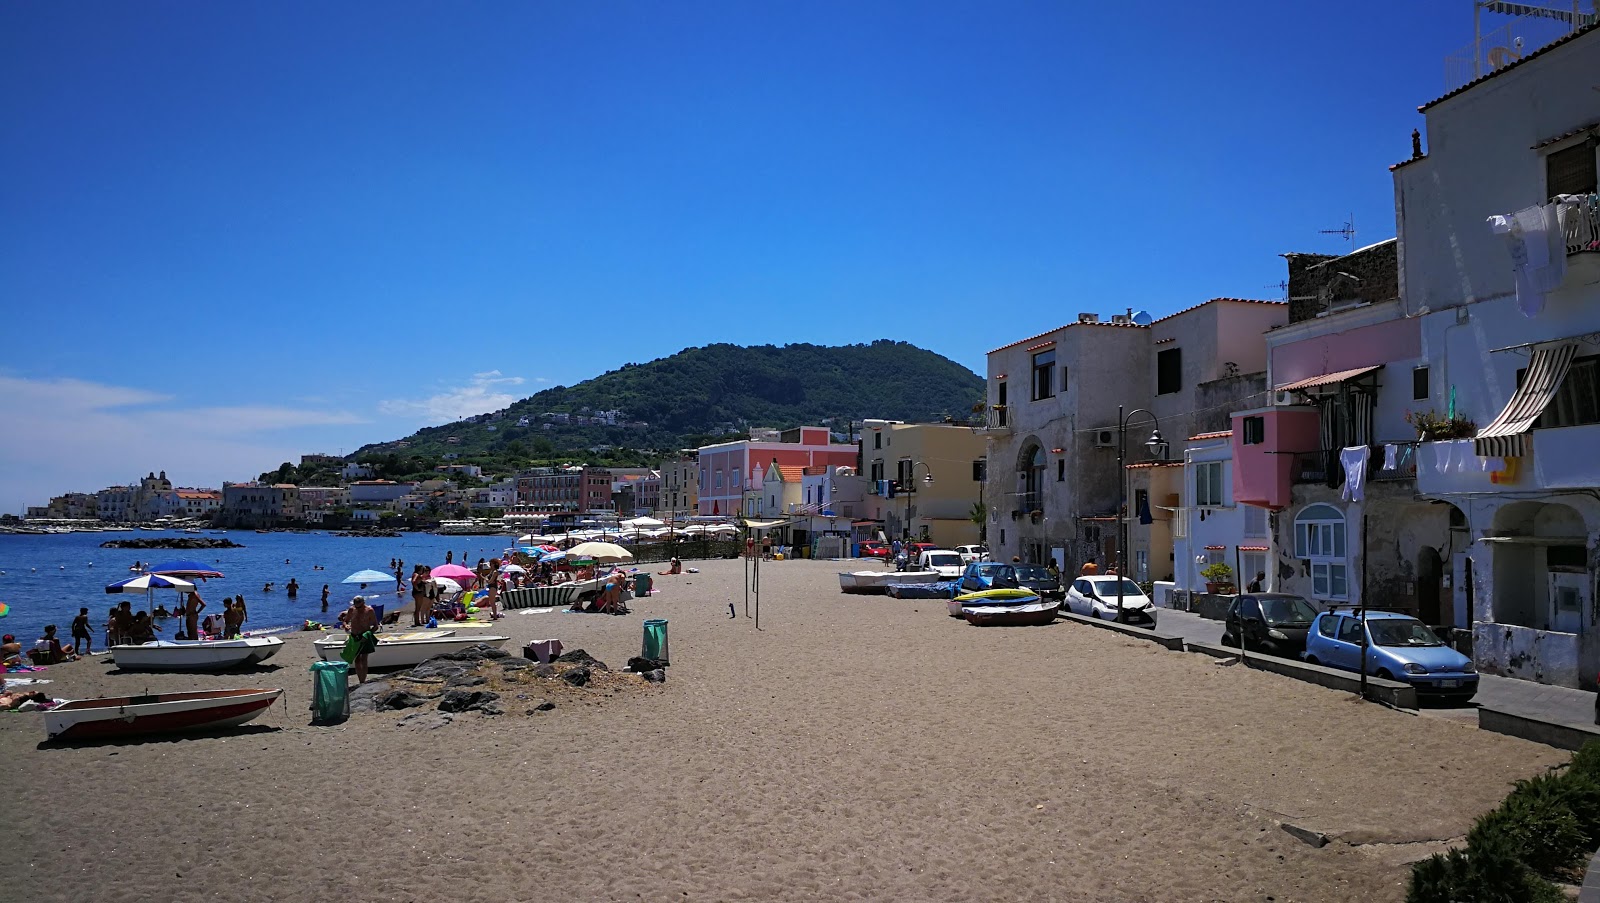 Foto af Spiaggia dei Pescatori med høj niveau af renlighed